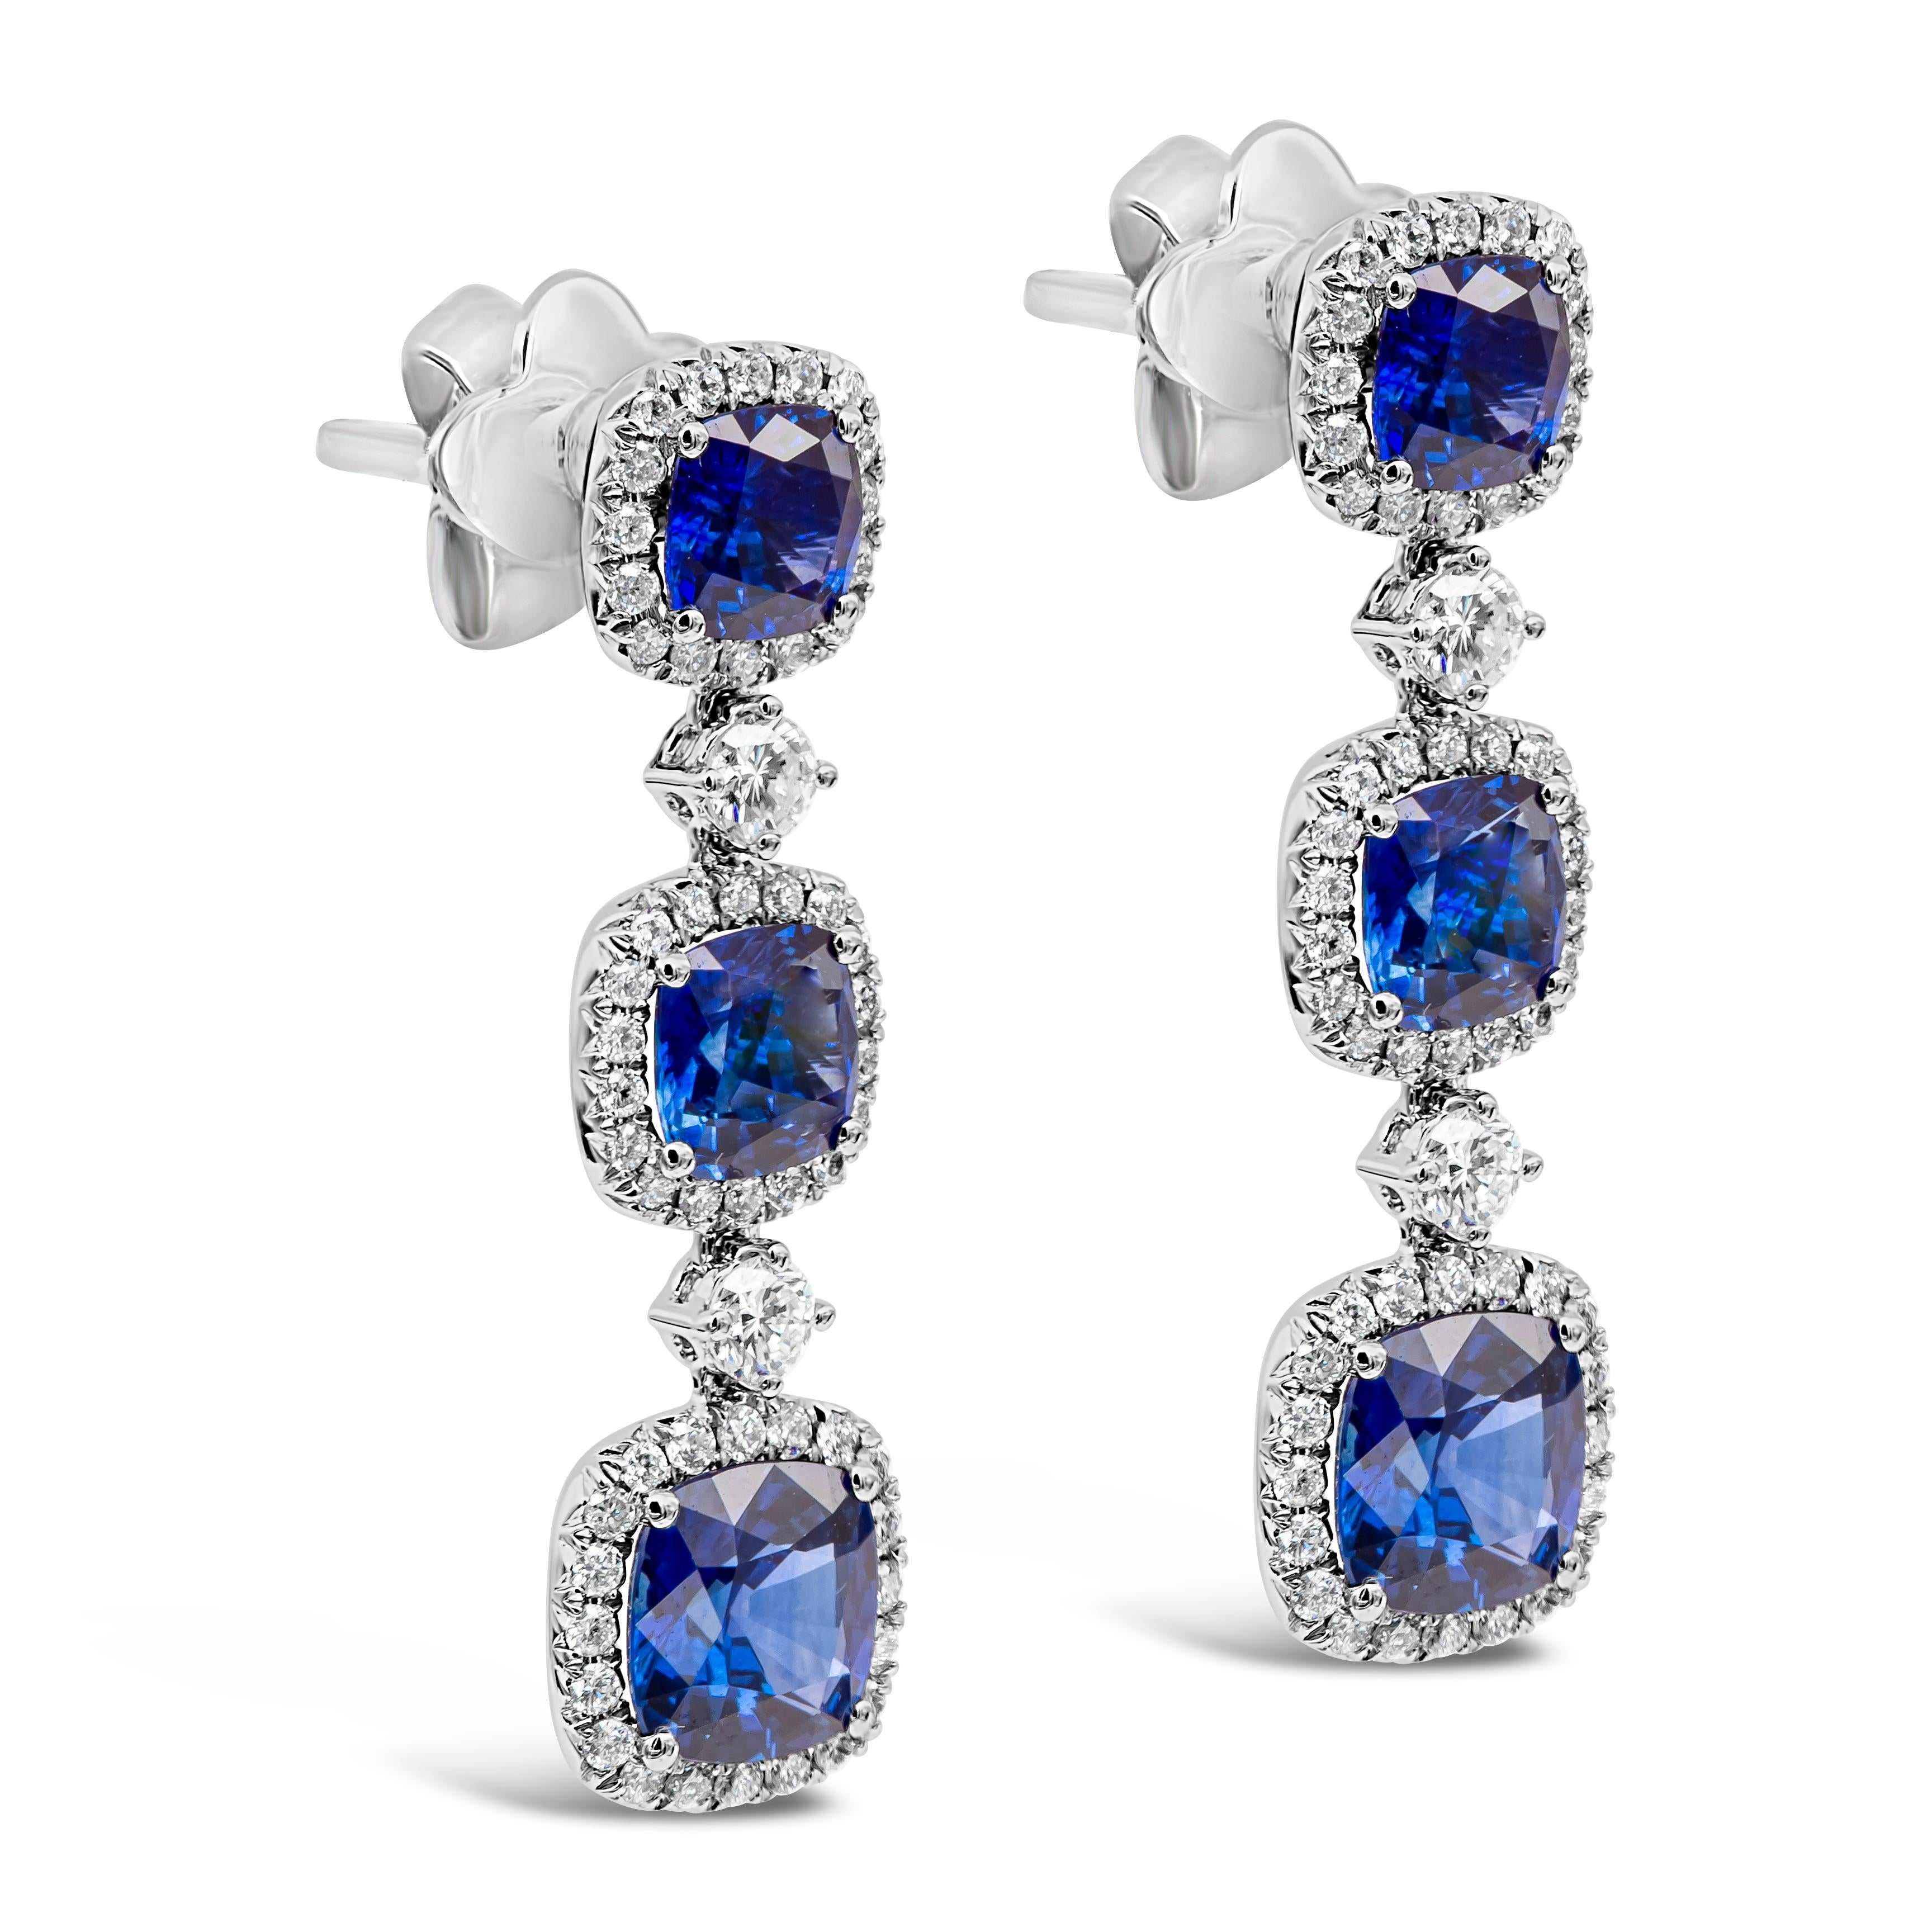 Dieser extravagante Ohrring besteht aus einer Reihe von blauen Saphiren im Kissenschliff mit einem Gesamtgewicht von 4,51 Karat, die jeweils von einem Brillantring umgeben sind. Die Diamanten wiegen insgesamt 0.73 Karat. Hergestellt aus 18 Karat